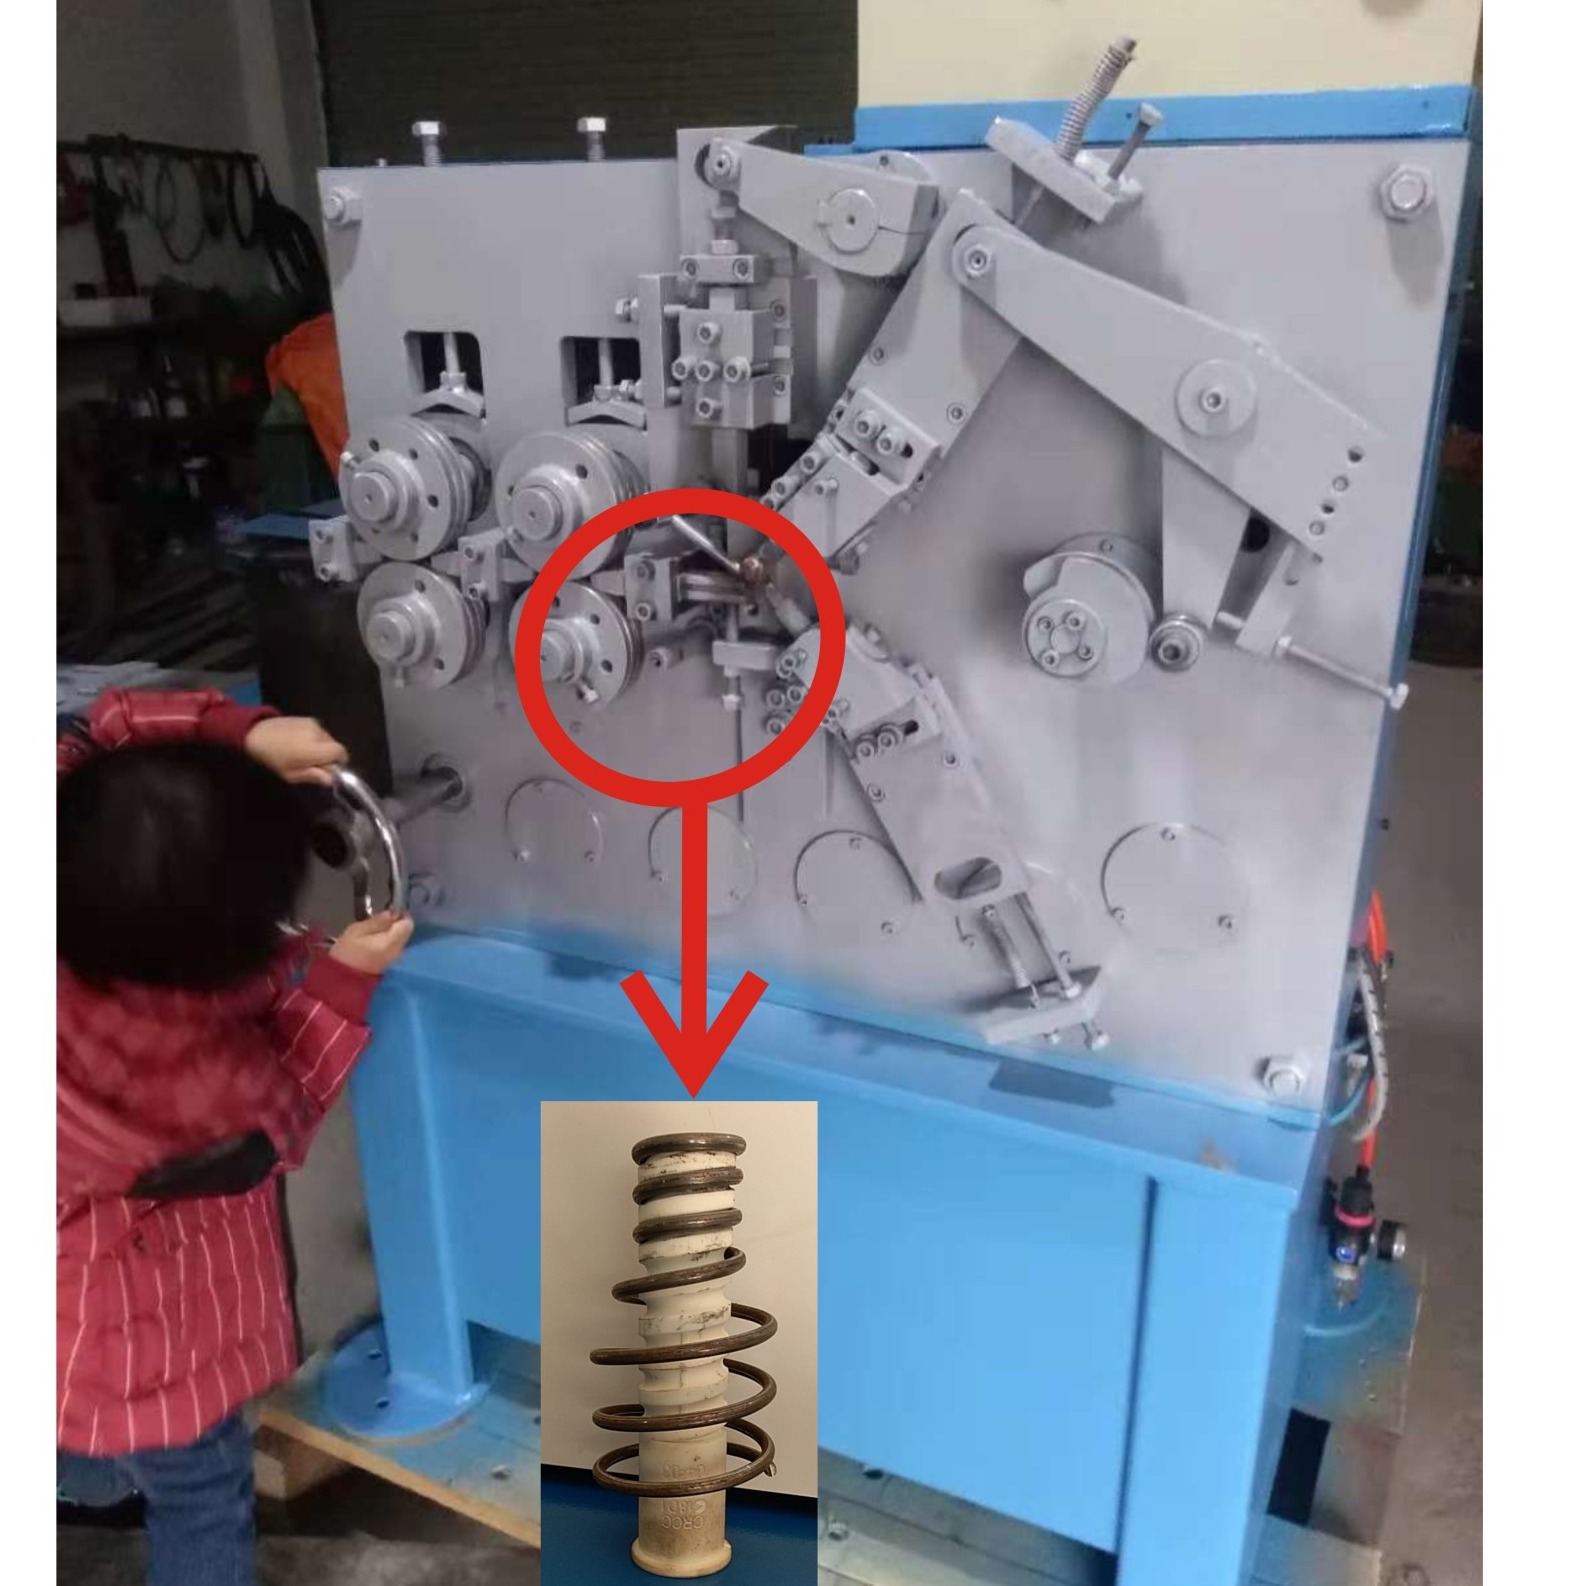 弹簧机 浙江弹簧机生产厂家 出口弹簧机供应商 温州欣达弹簧机厂生产自动弹簧机械设备